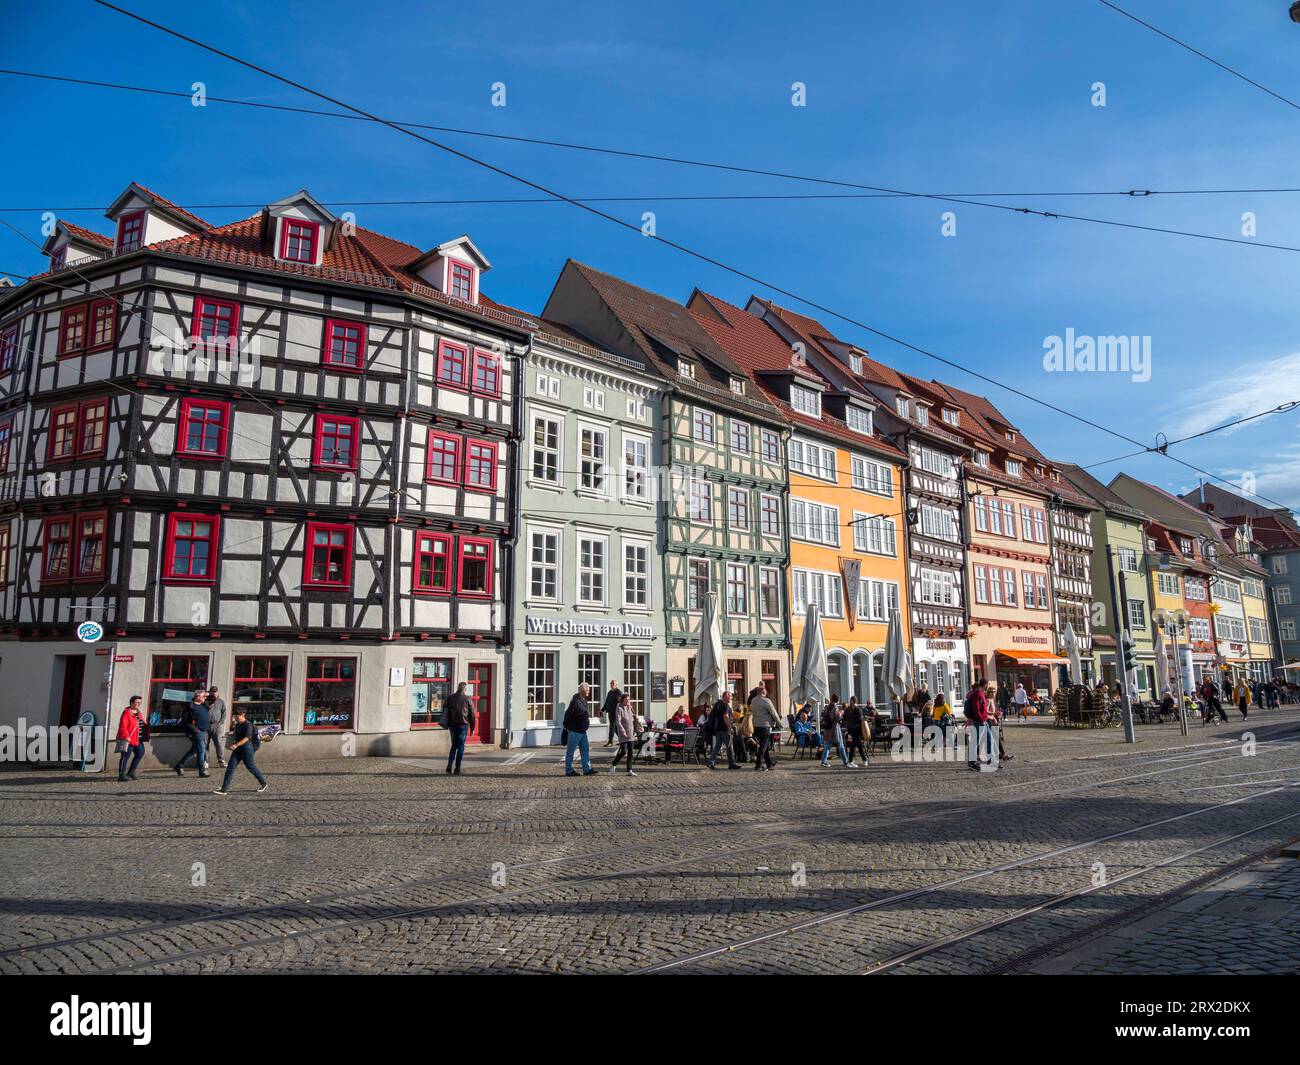 Vue de la ville d'Erfurt, la capitale et la plus grande ville de l'État de Thuringe en Allemagne centrale, Allemagne, Europe Banque D'Images